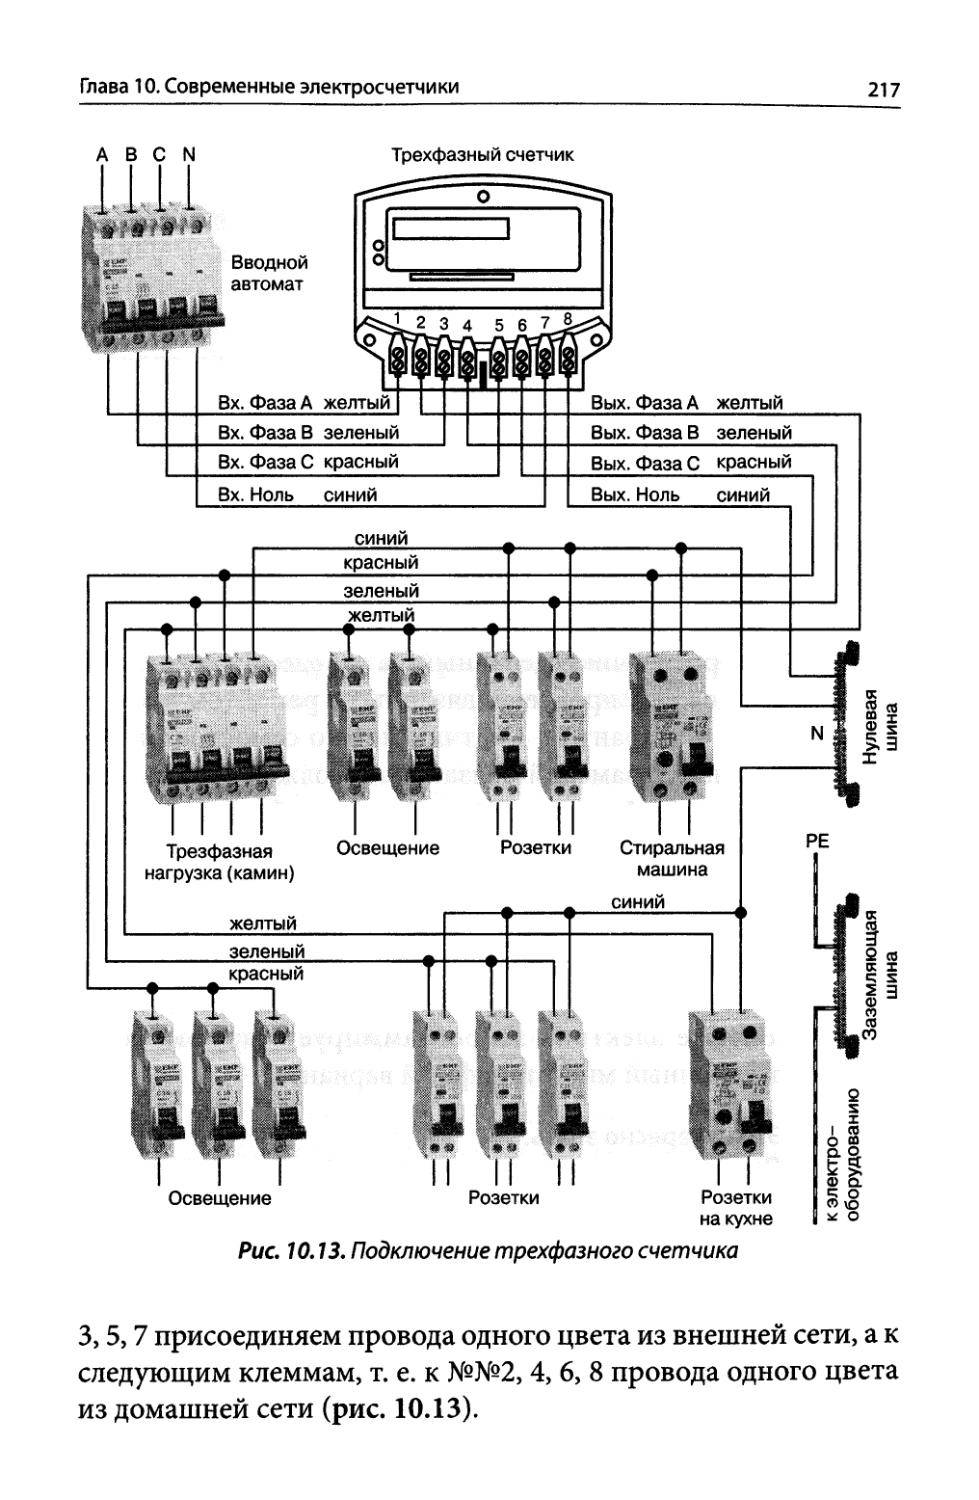 Схема подключения трехфазного электросчетчика к сети